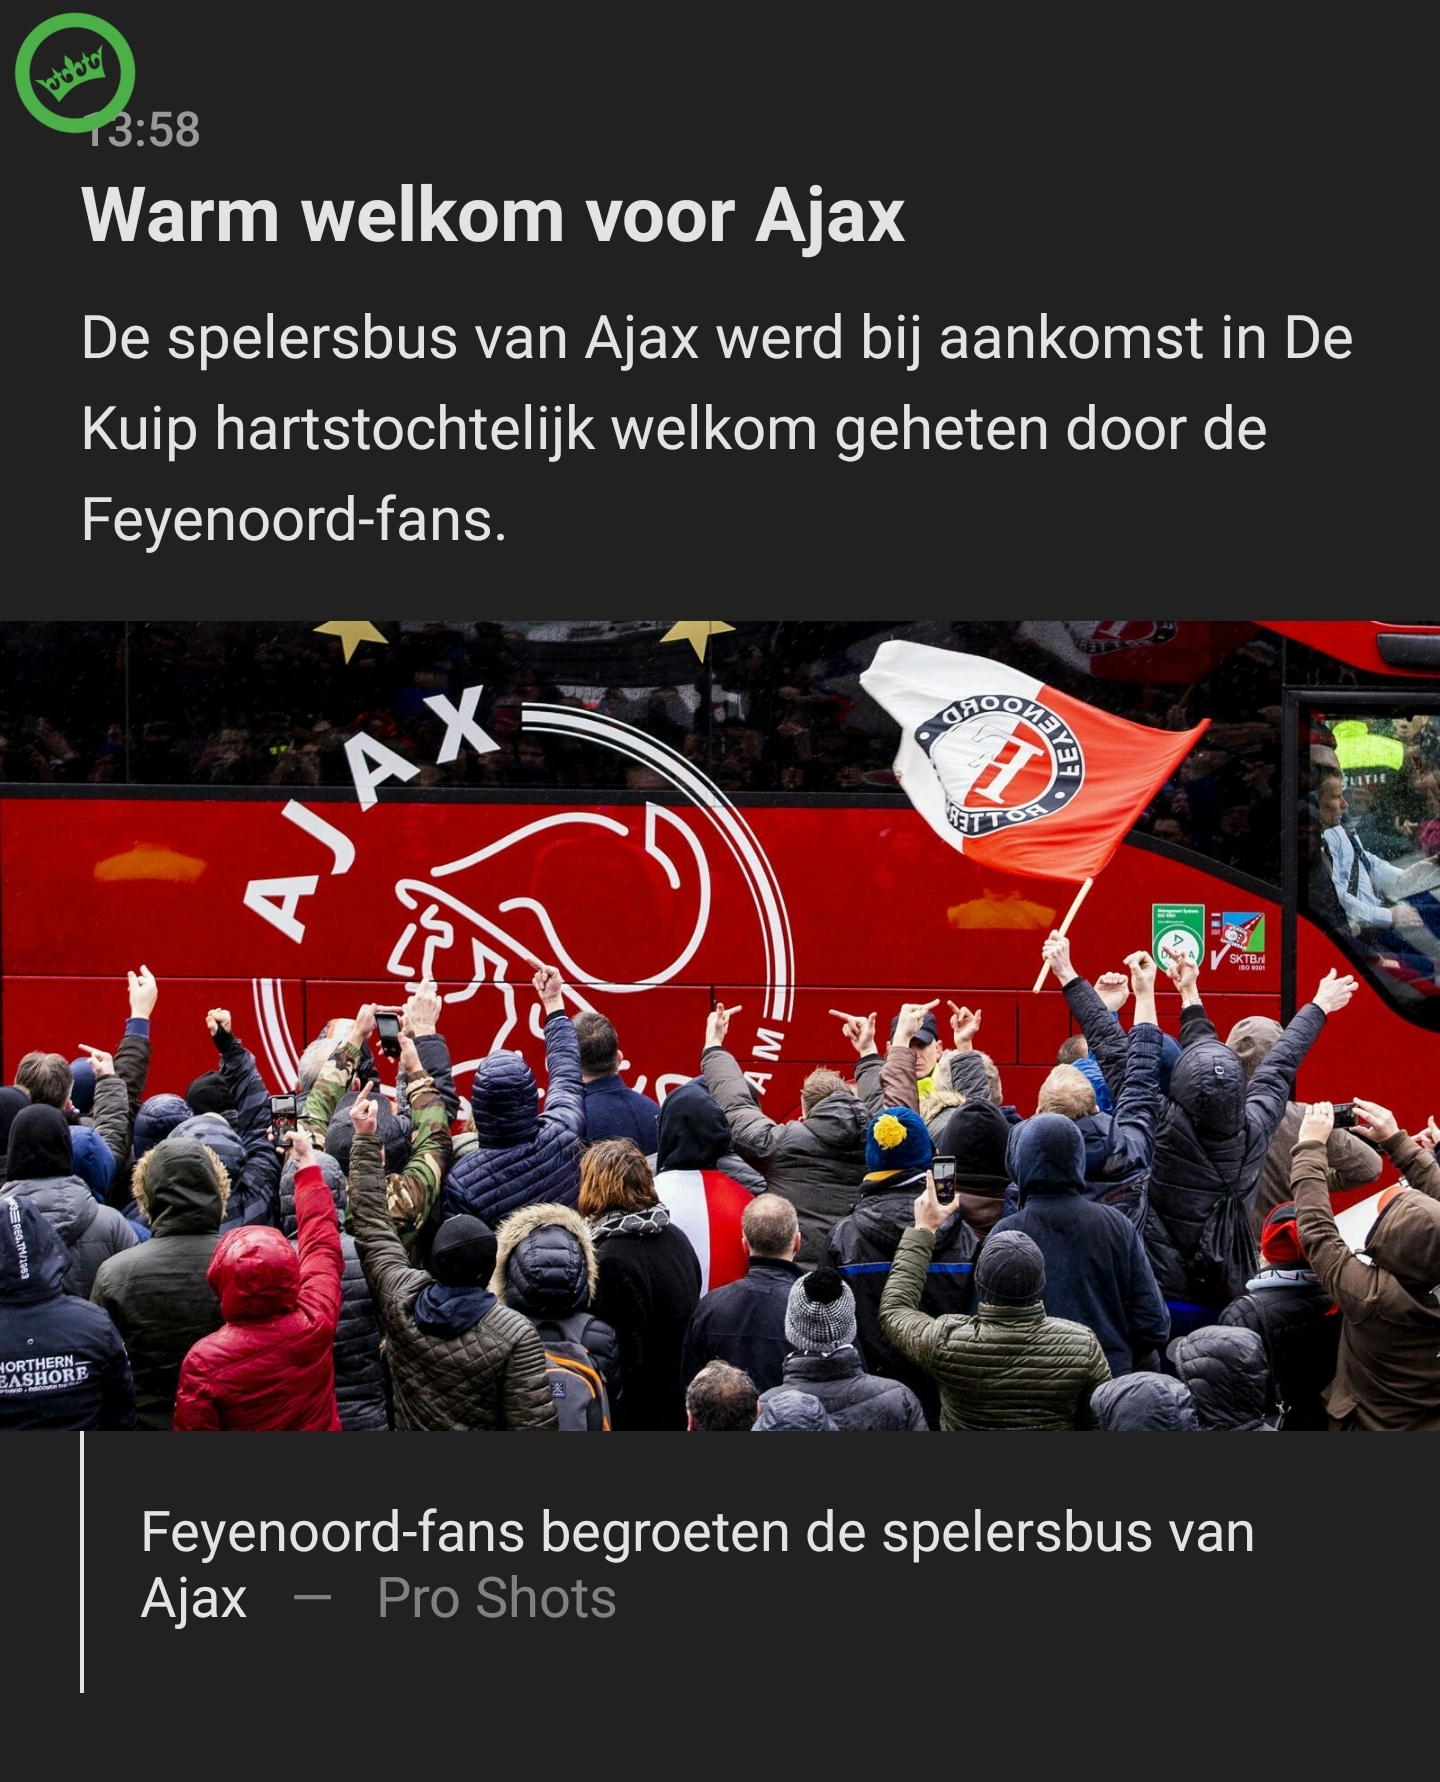 Warm welkom voor Ajax in de Kuip